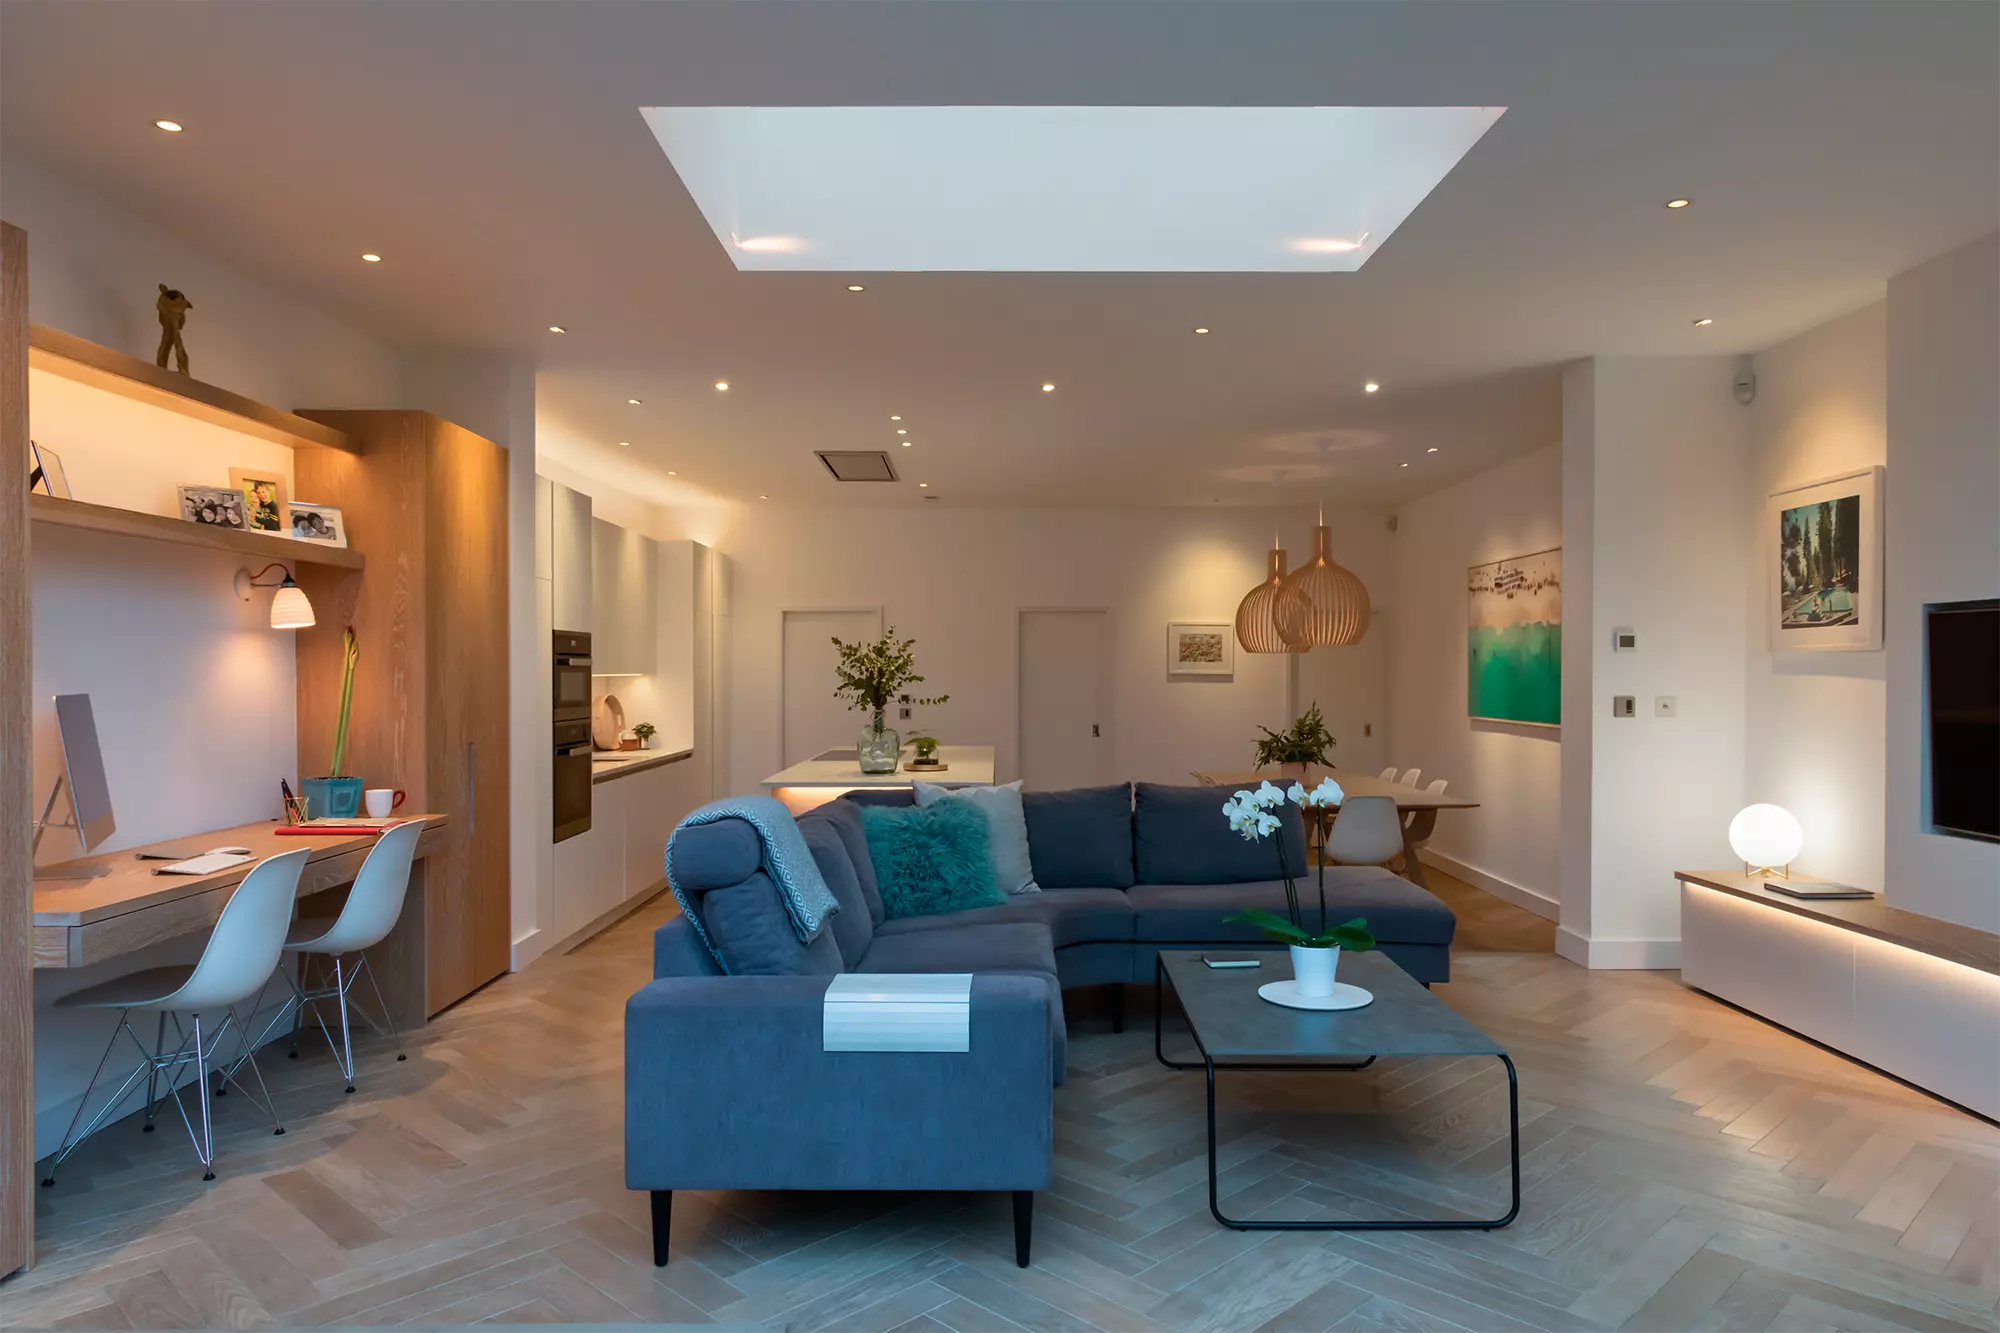 غرفة معيشة حديثة مضاءة جيدًا وتتميز بمصادر إضاءة متعددة بما في ذلك مصابيح السقف المريحة ومنور كبير